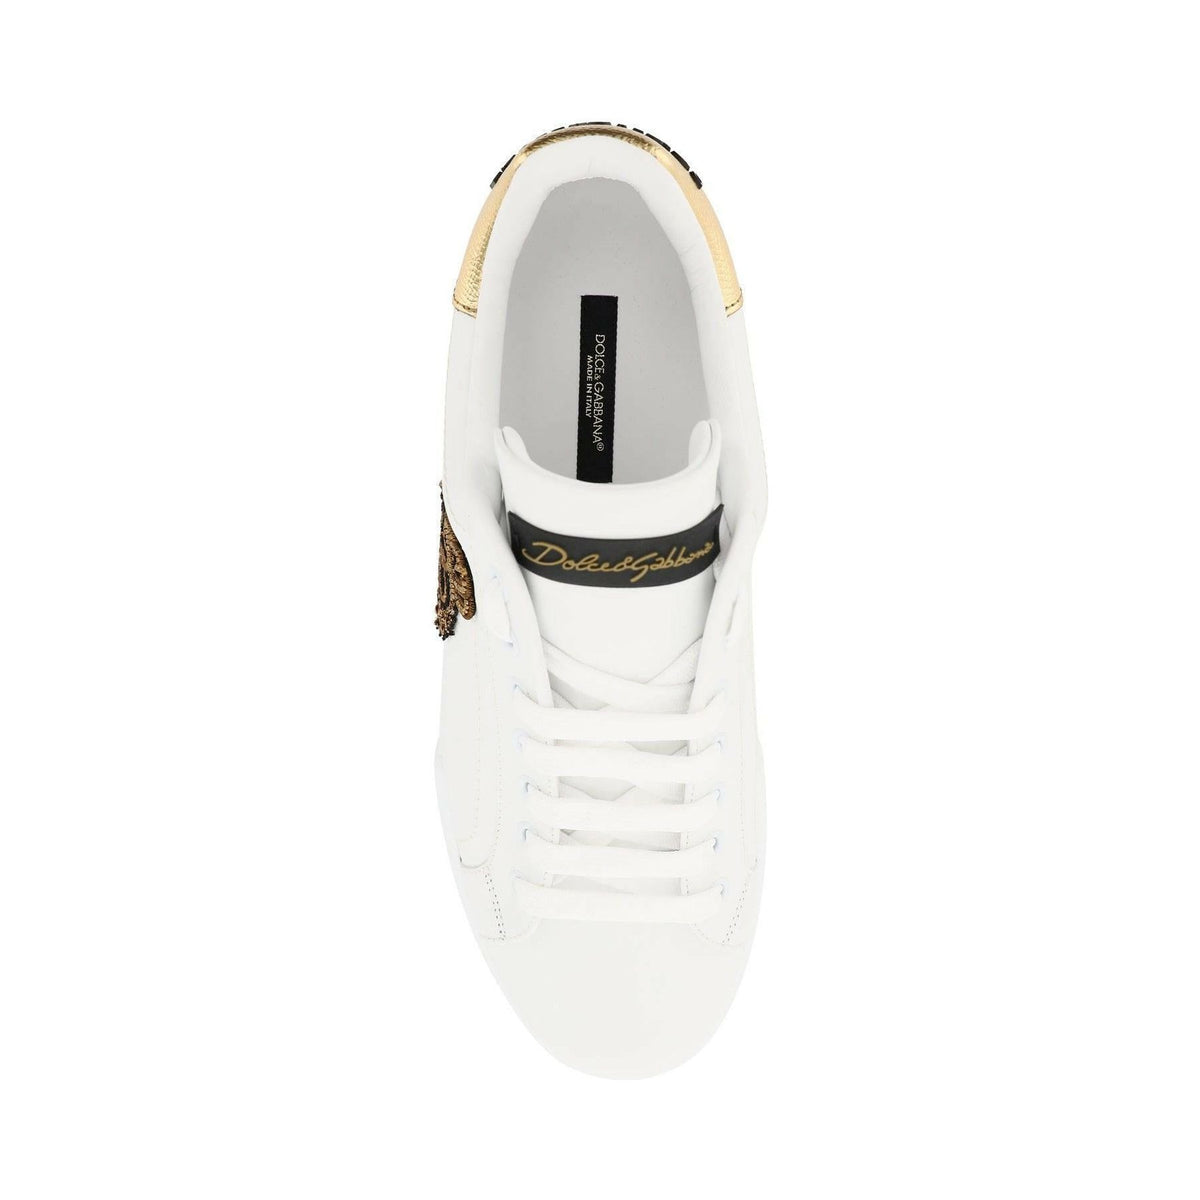 DOLCE & GABBANA - White Oro Scuro Portofino Leather Sneakers With Logo Patch - JOHN JULIA